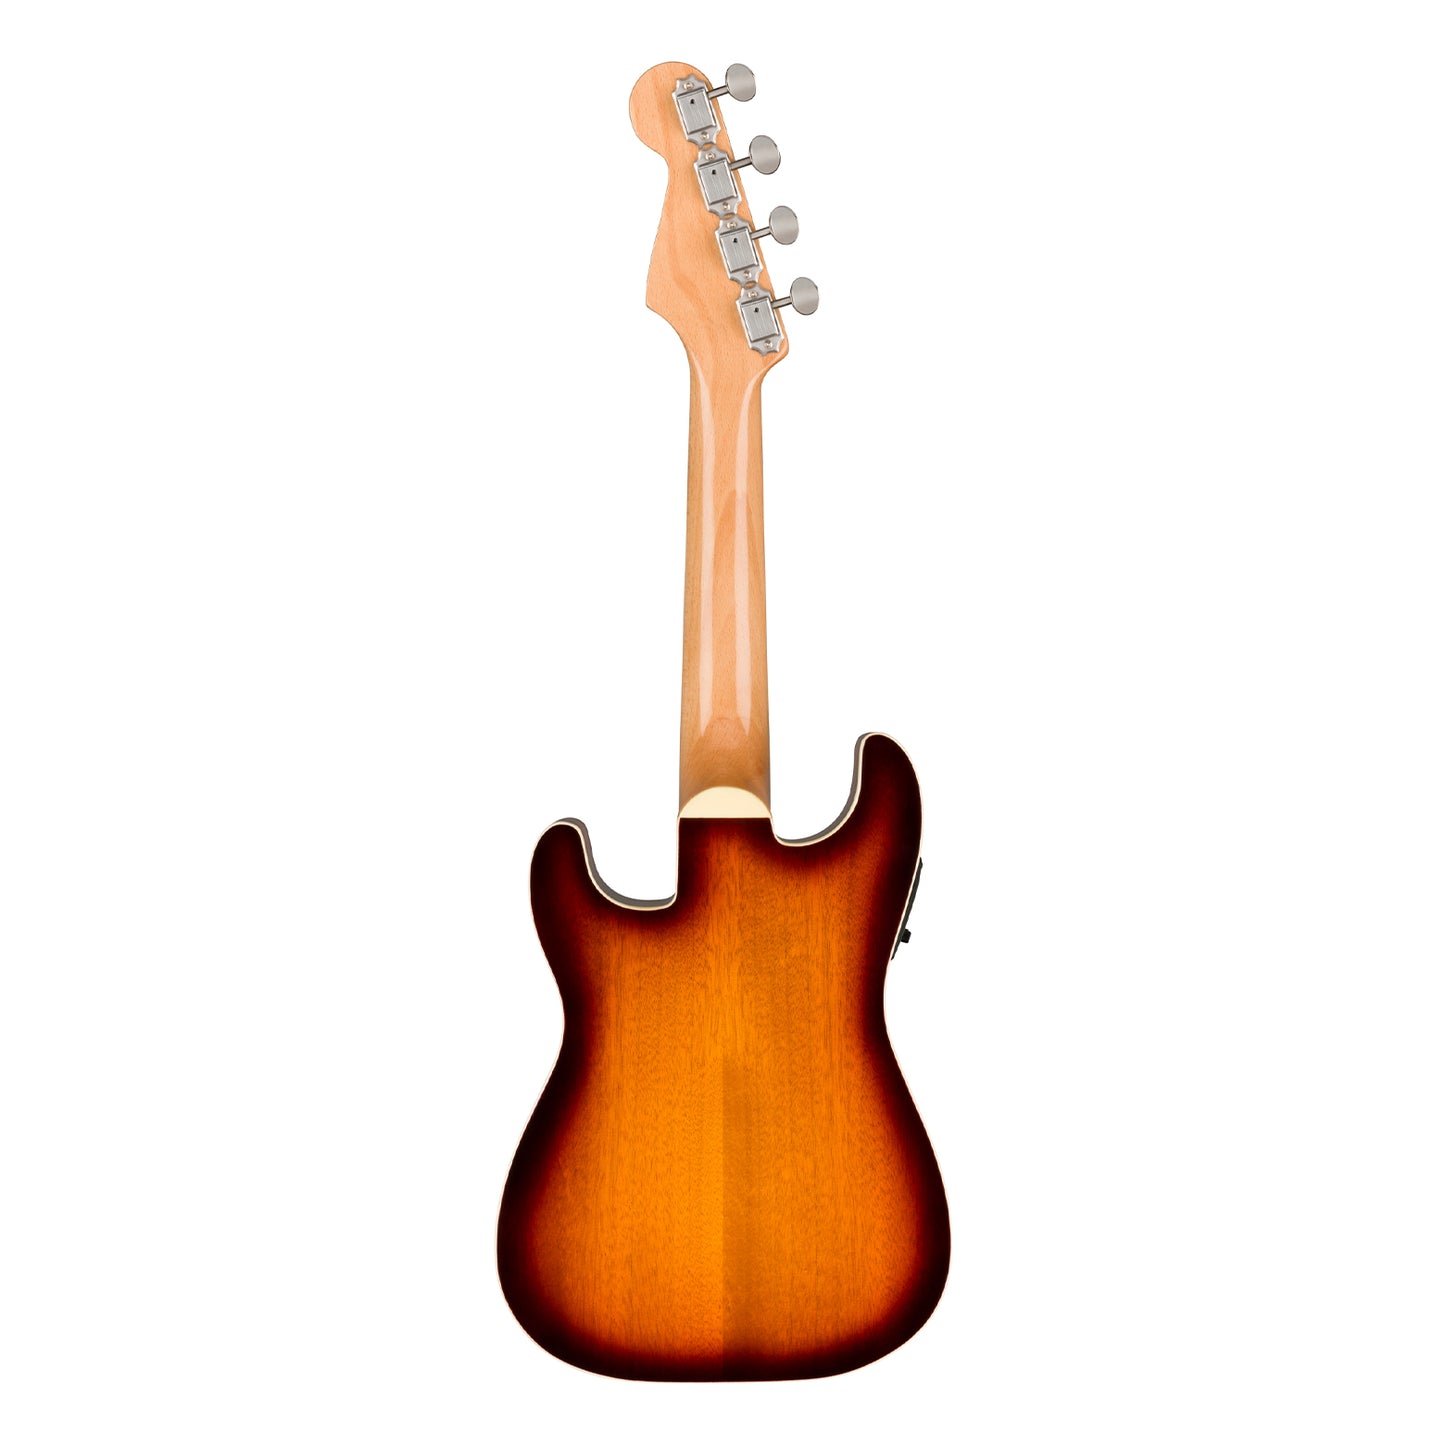 Fender Fullerton Stratocaster Concert Ukulele Acoustic Electric 4 String Guitar with Built-in Tuner, Volume / Tone Controls (Sunburst, Black)